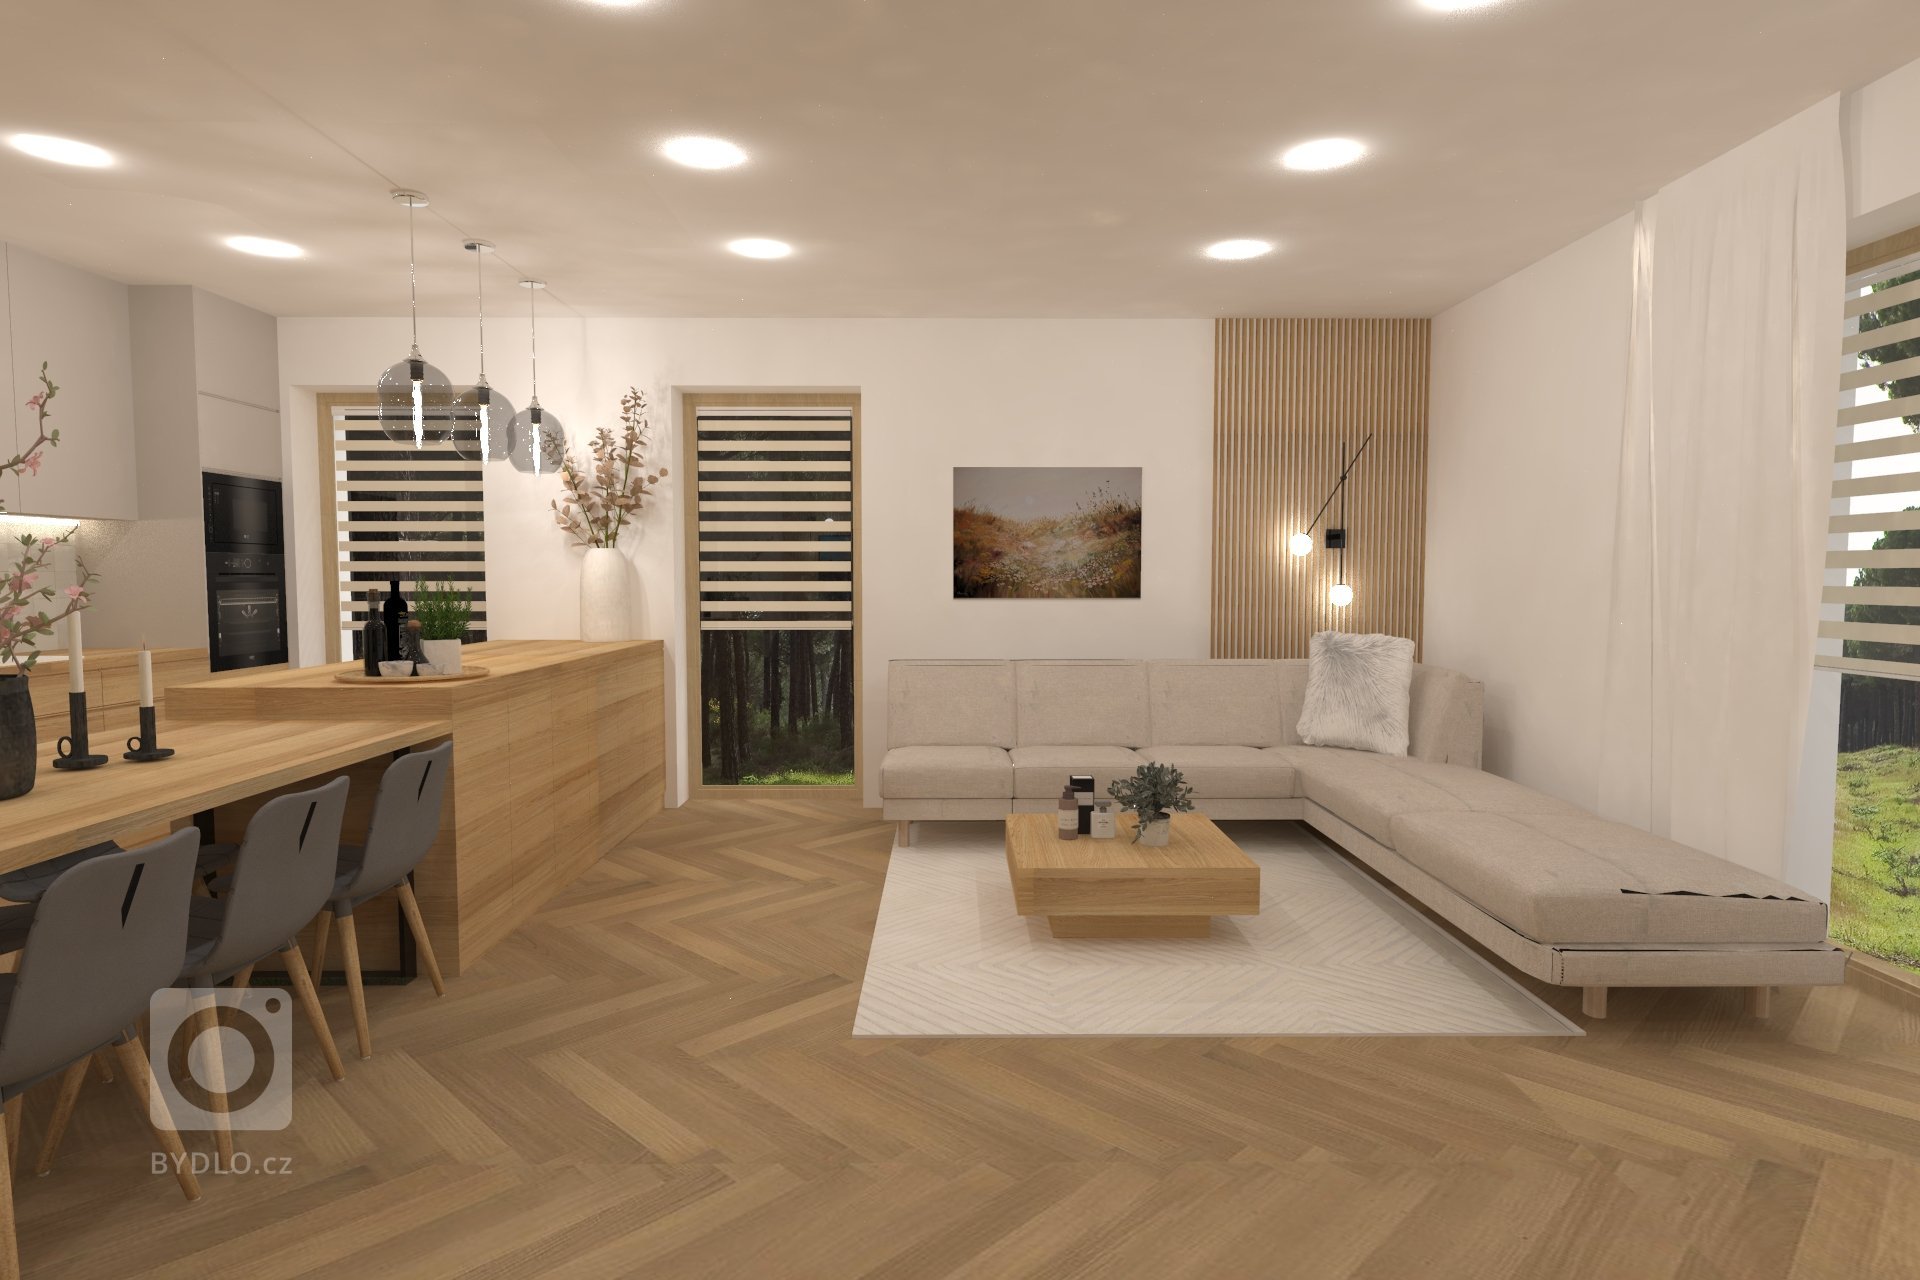 Vizualizace kuchyně s obývacím pokojem v přírodních tonech doplněná o zlaté detaily. Luxusní moderní vzhled, krásné dřevěné prvky včetně dřevěné podlahy.…